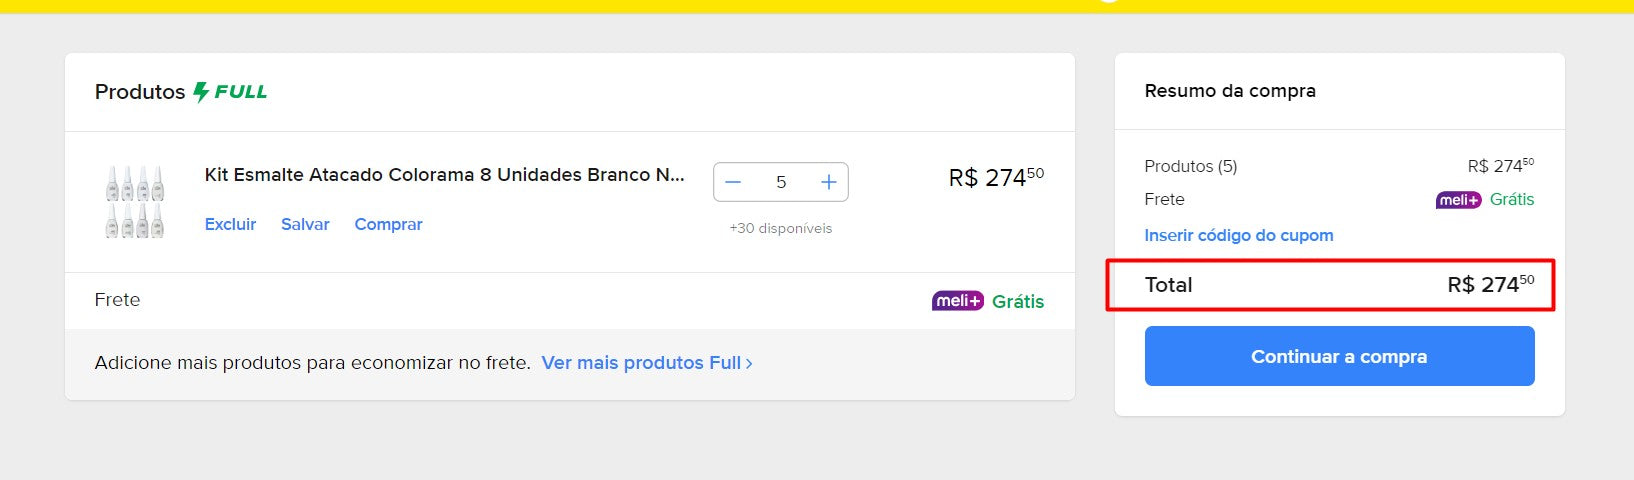 Persönlicher Einkäufer | Kaufen Sie in Brasilien – Kits für die Maniküre – 9 Kits – DDP